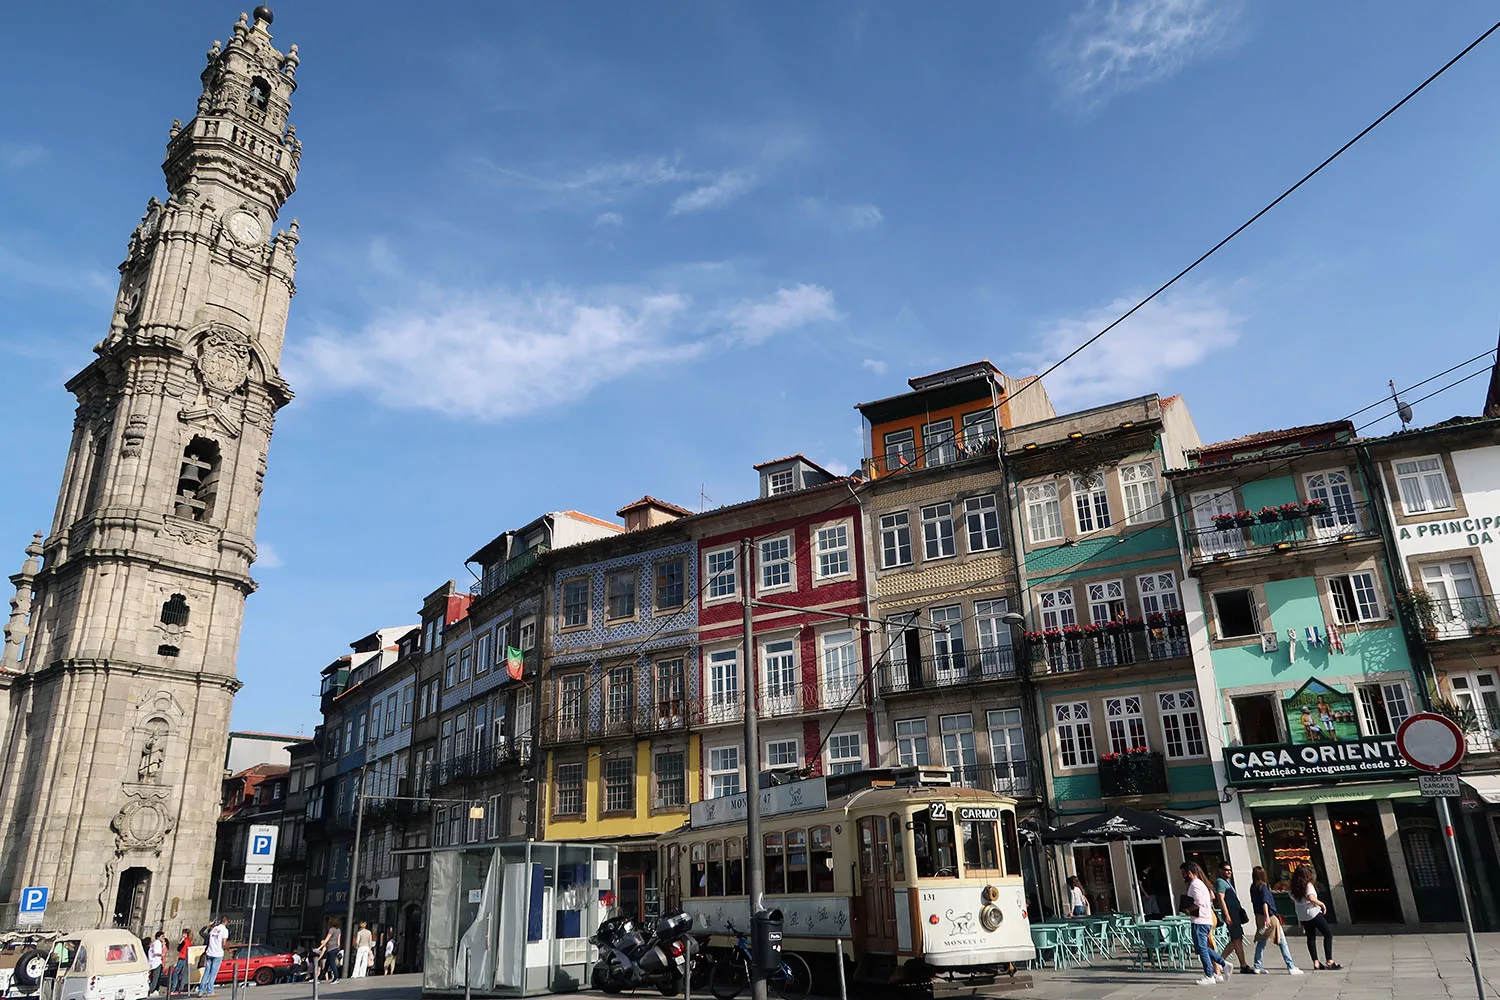 Tram in Porto